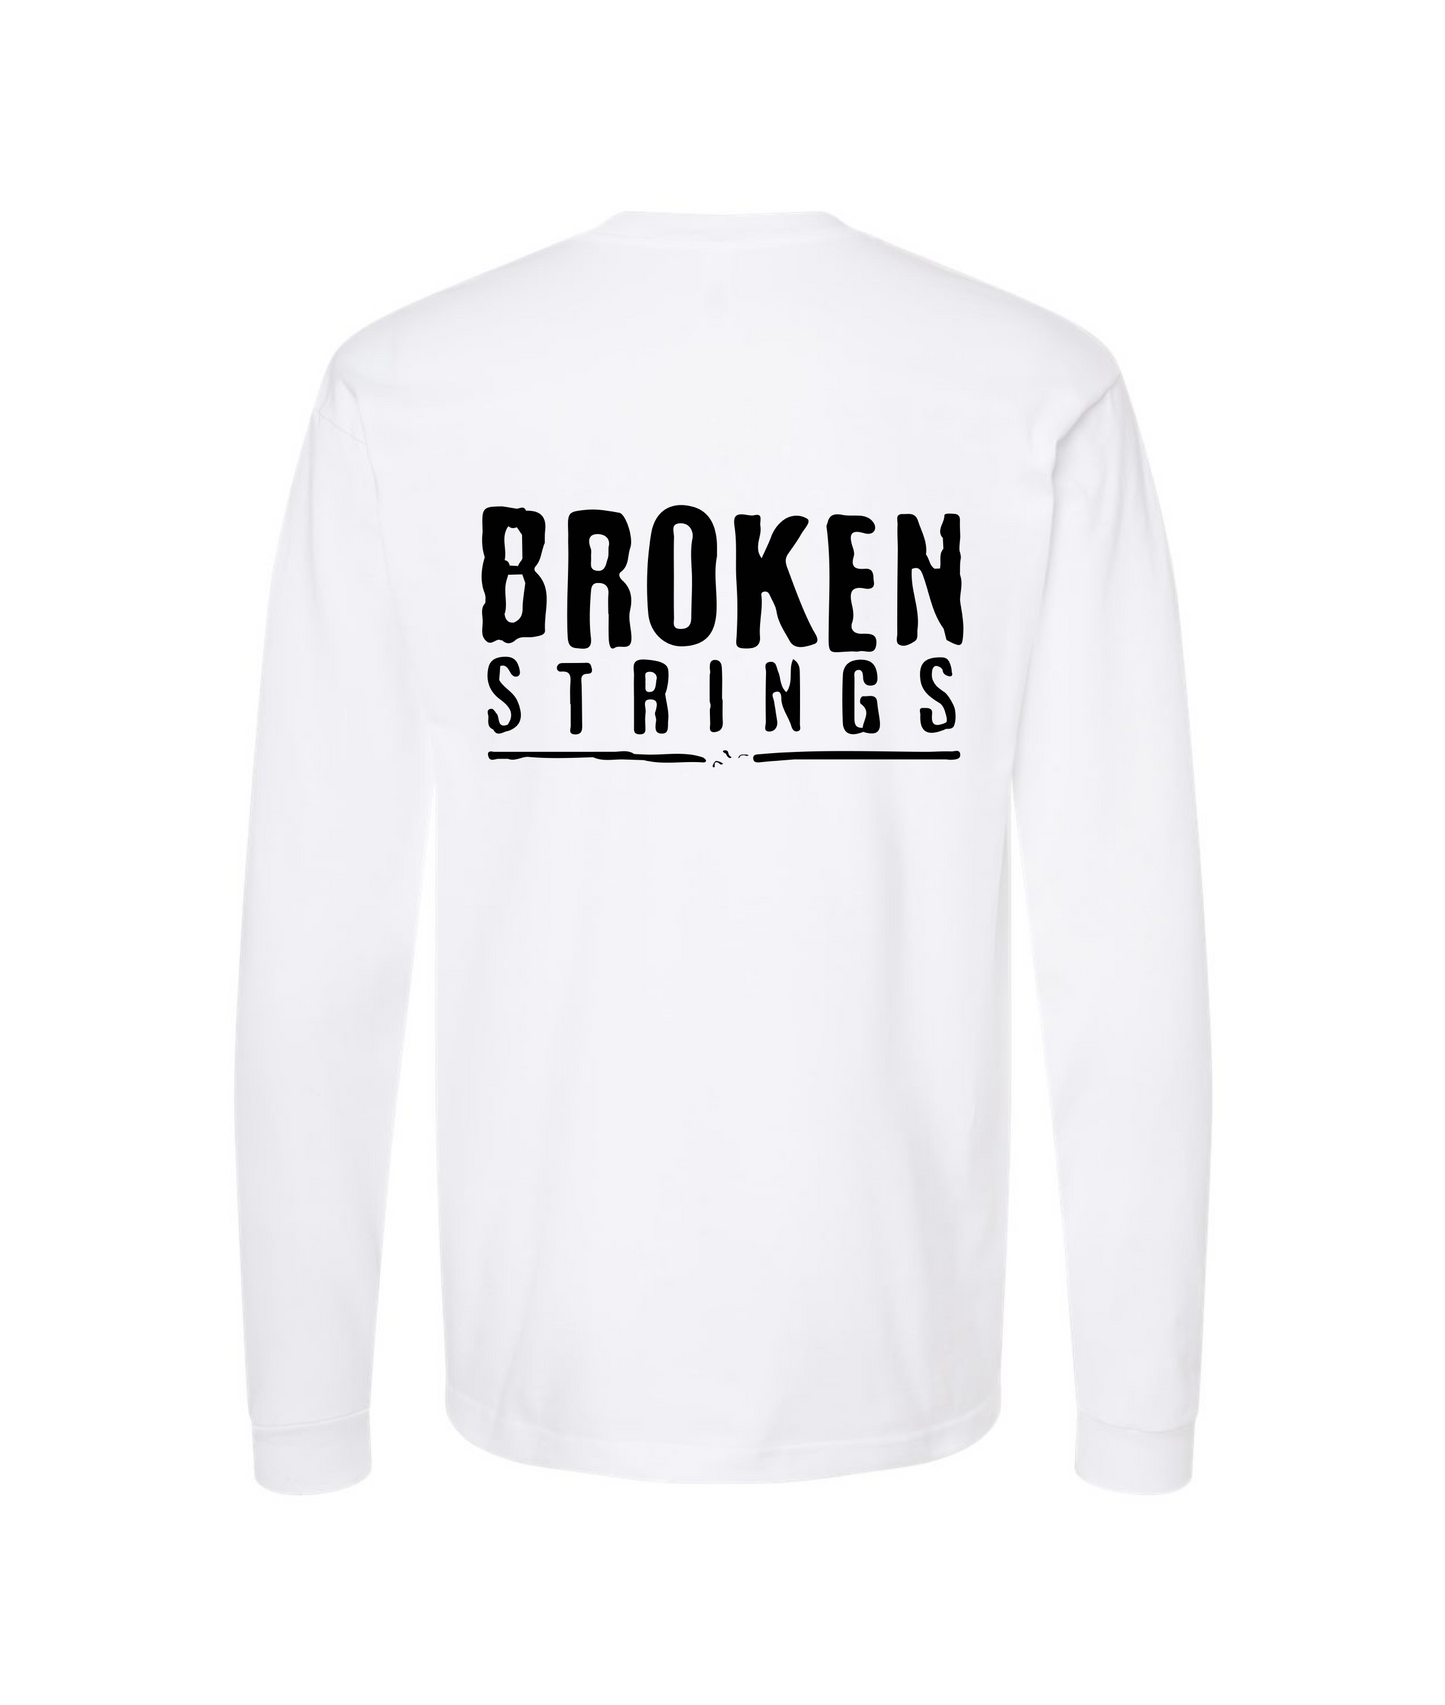 BROKEN STRINGS - BROKEN STRINGS - White Long Sleeve T